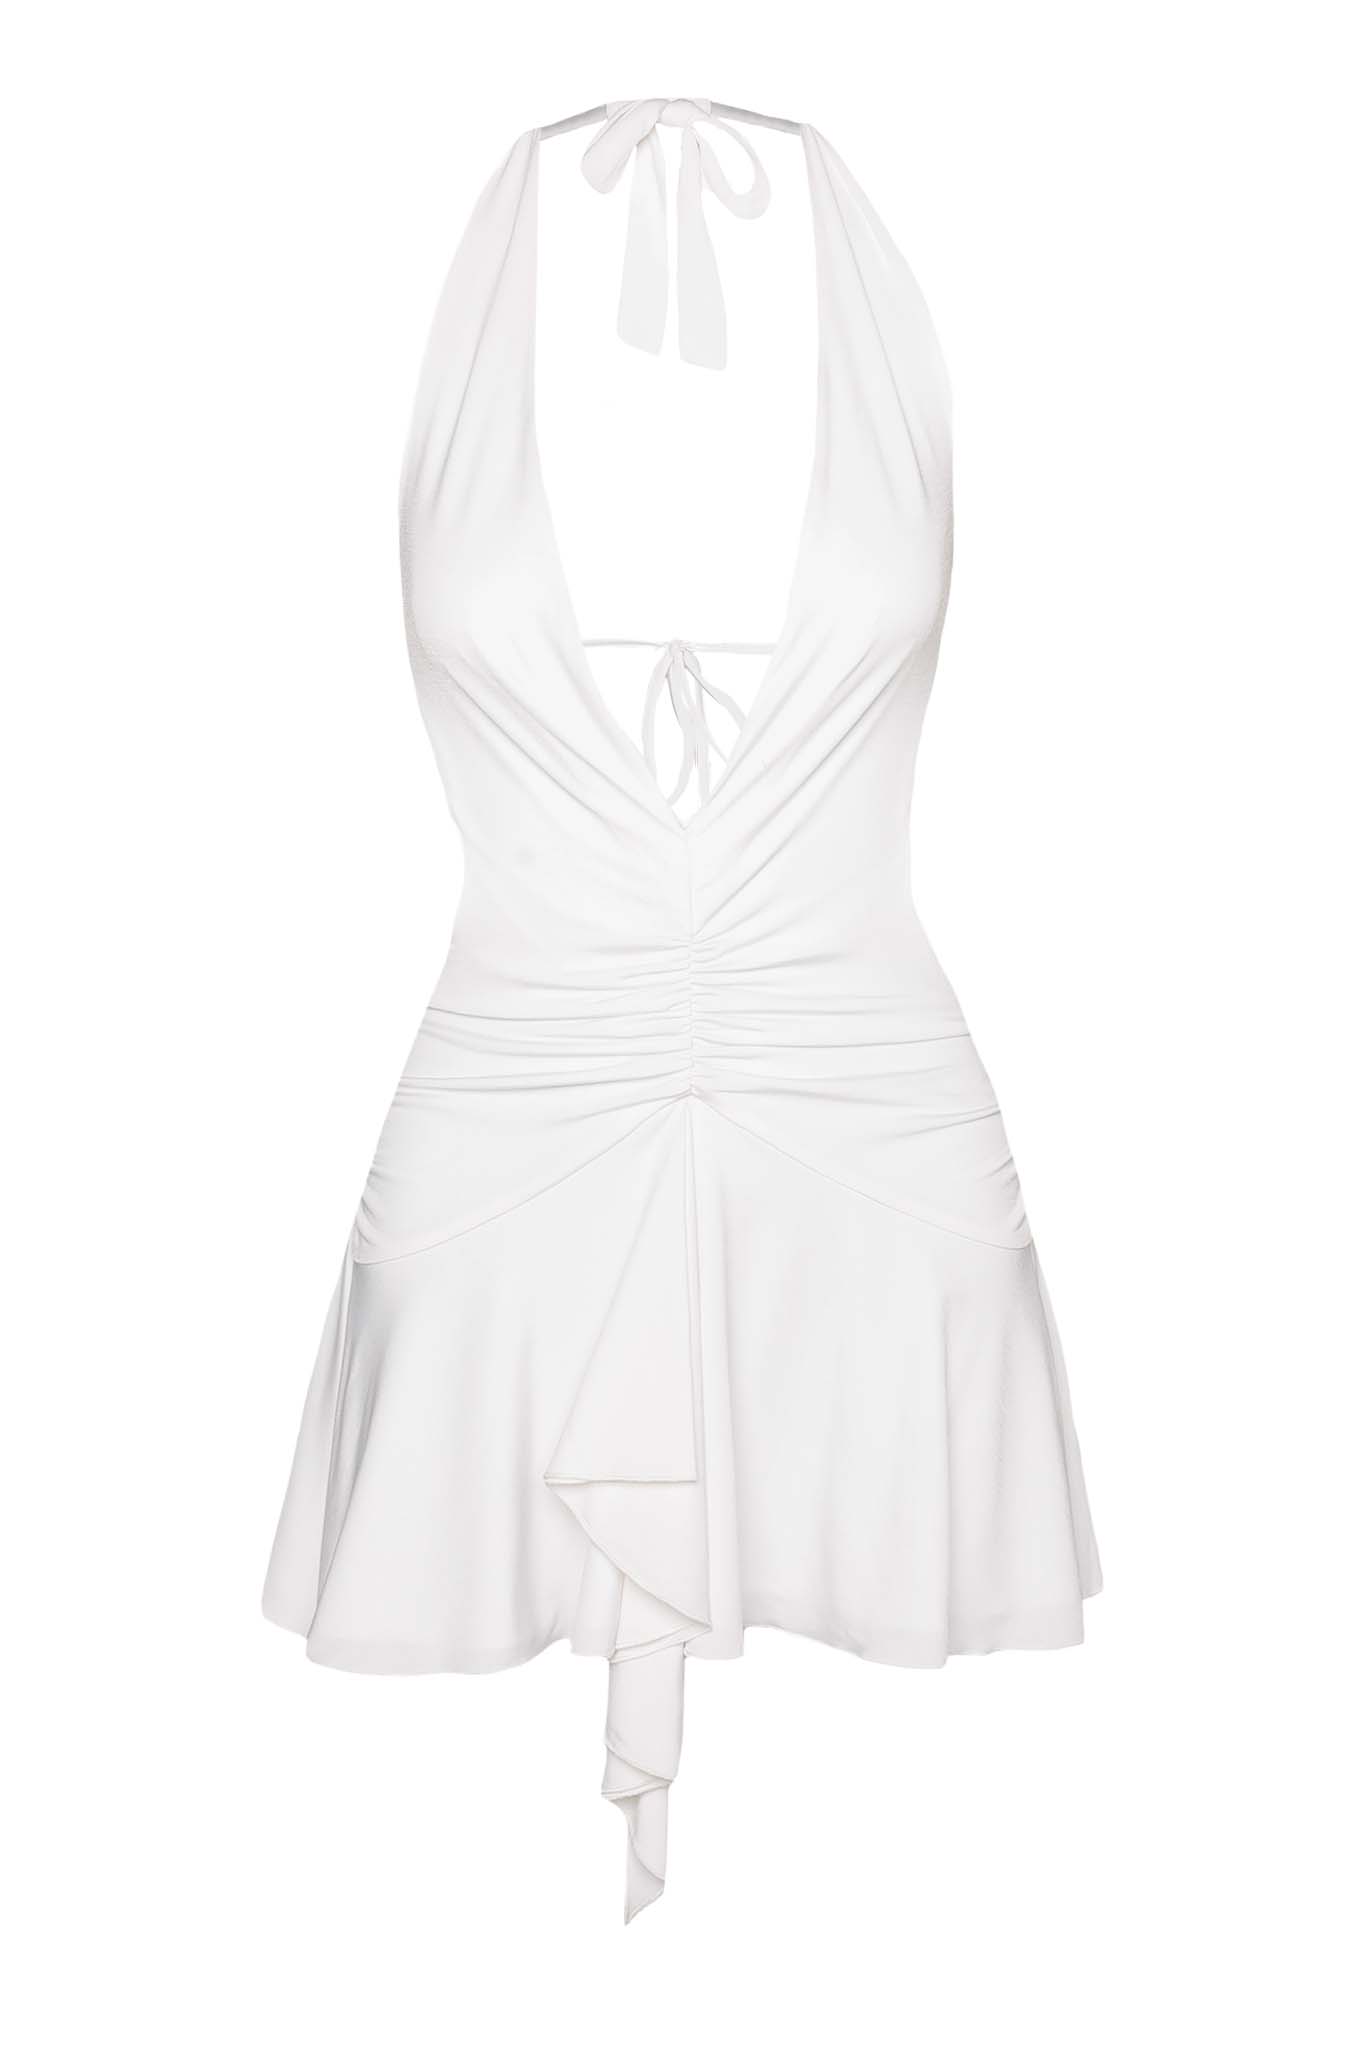 ORSON DRESS - WHITE